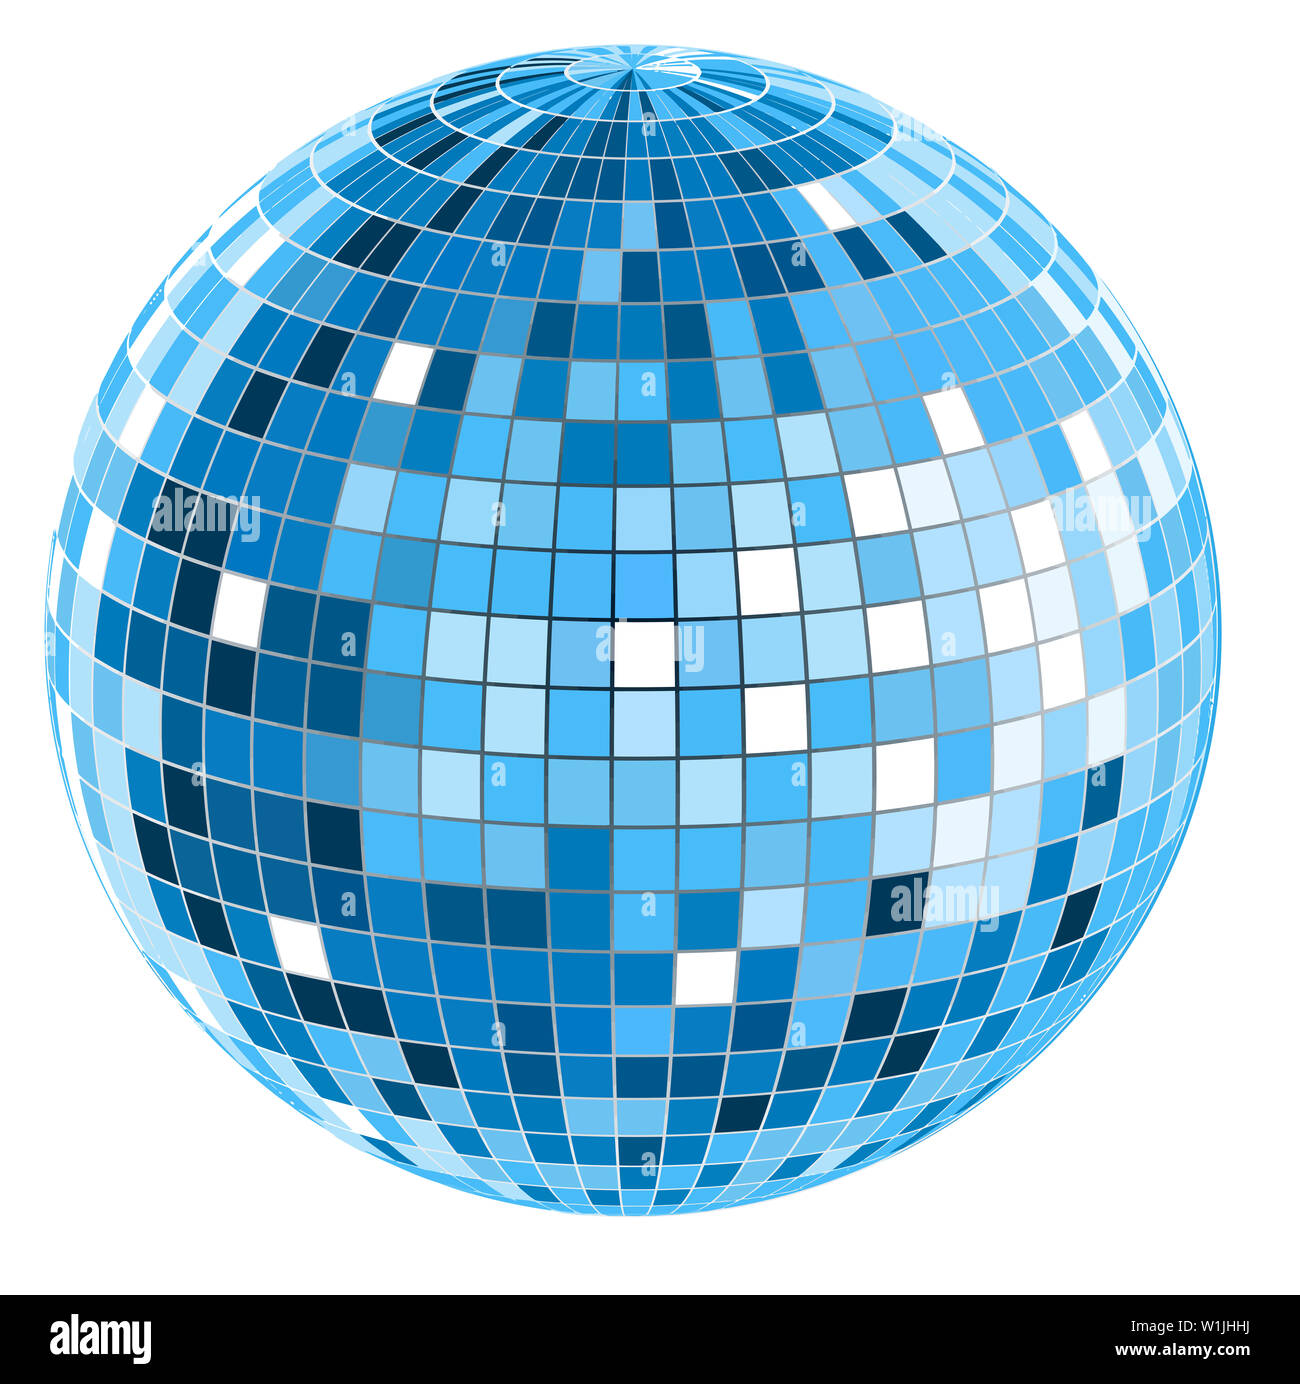 Spiegel-Disco-Ball vektor abbildung. Illustration von glanz - 34638603